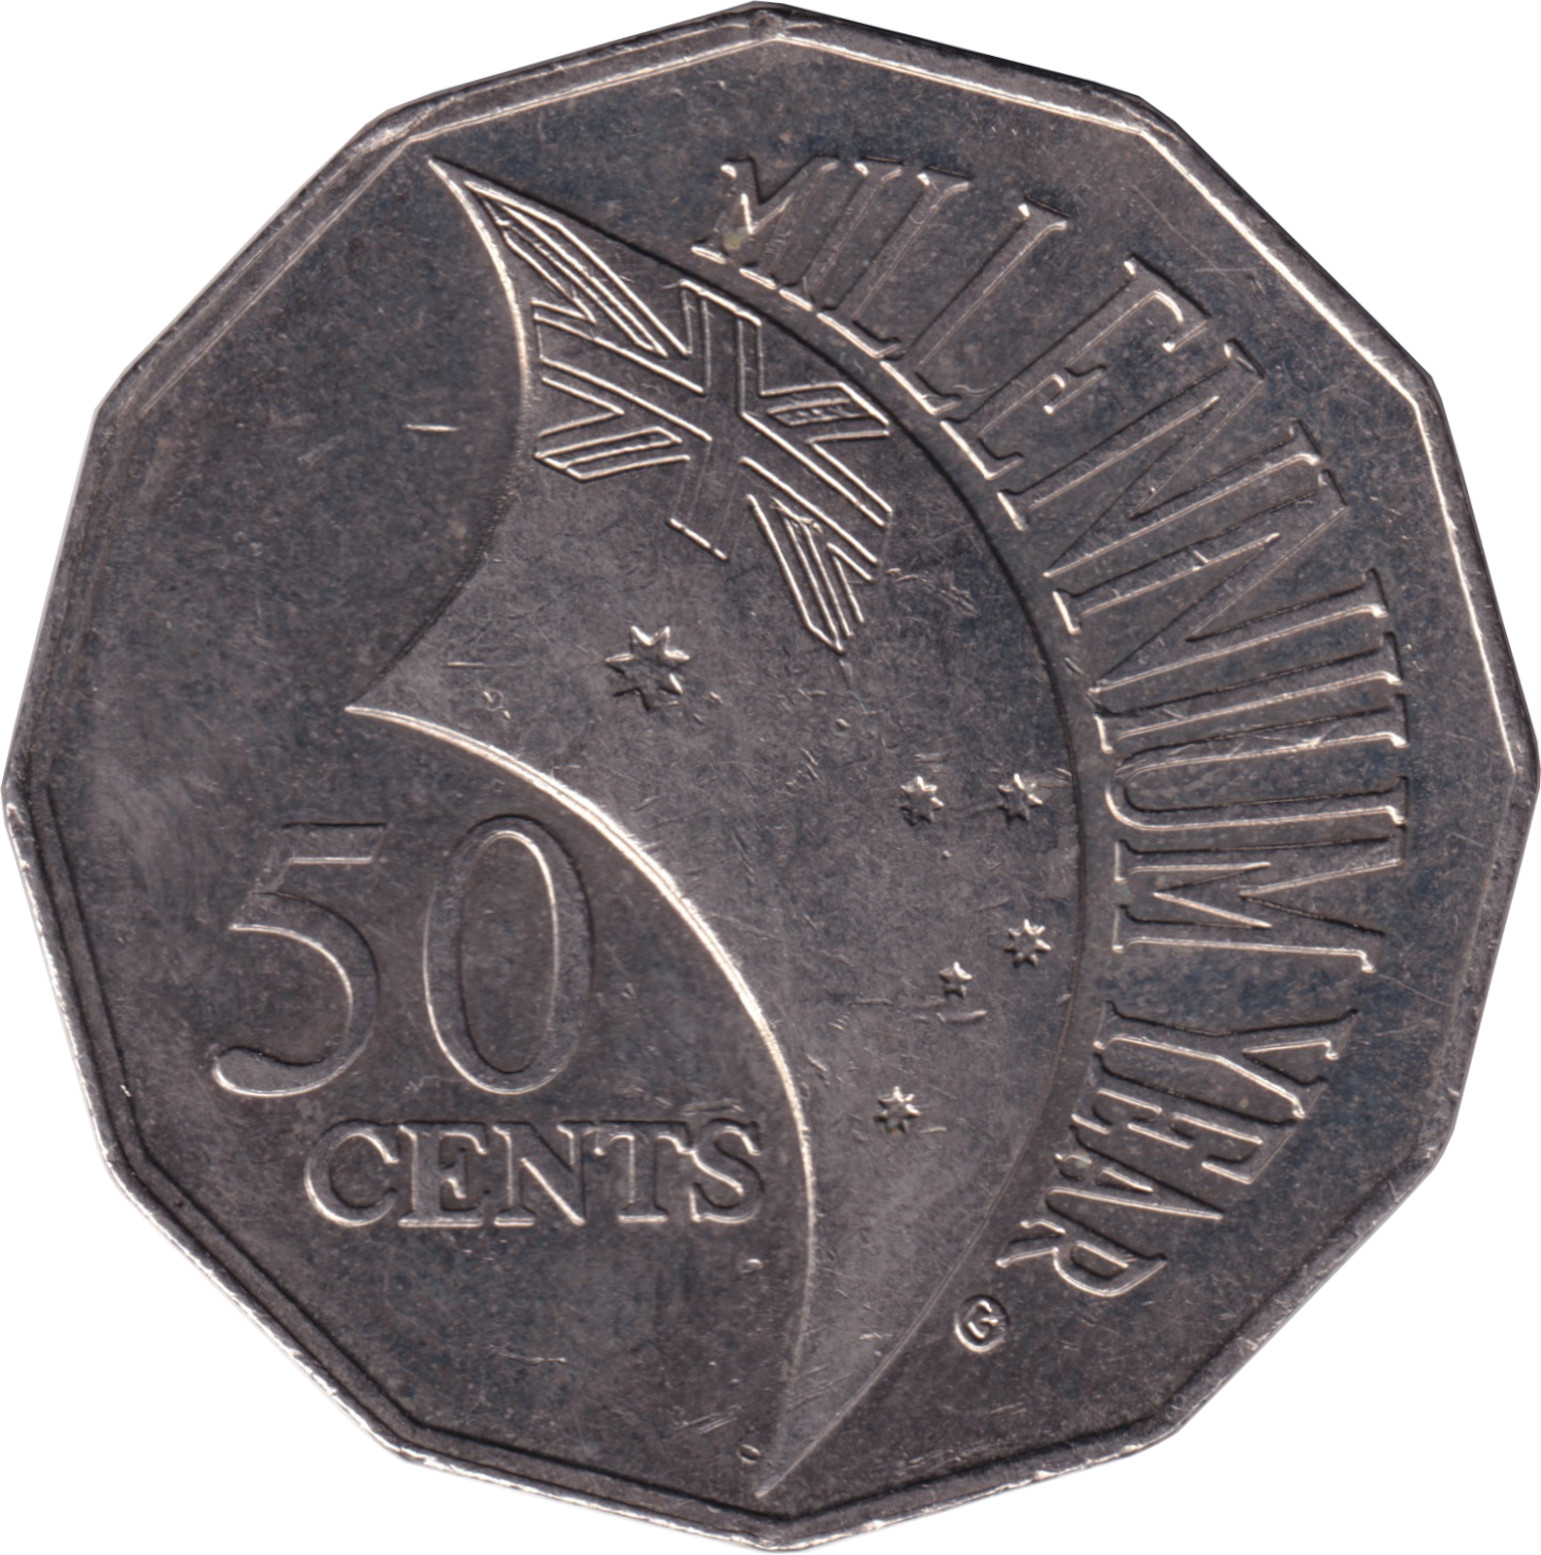 50 cents - Millennium